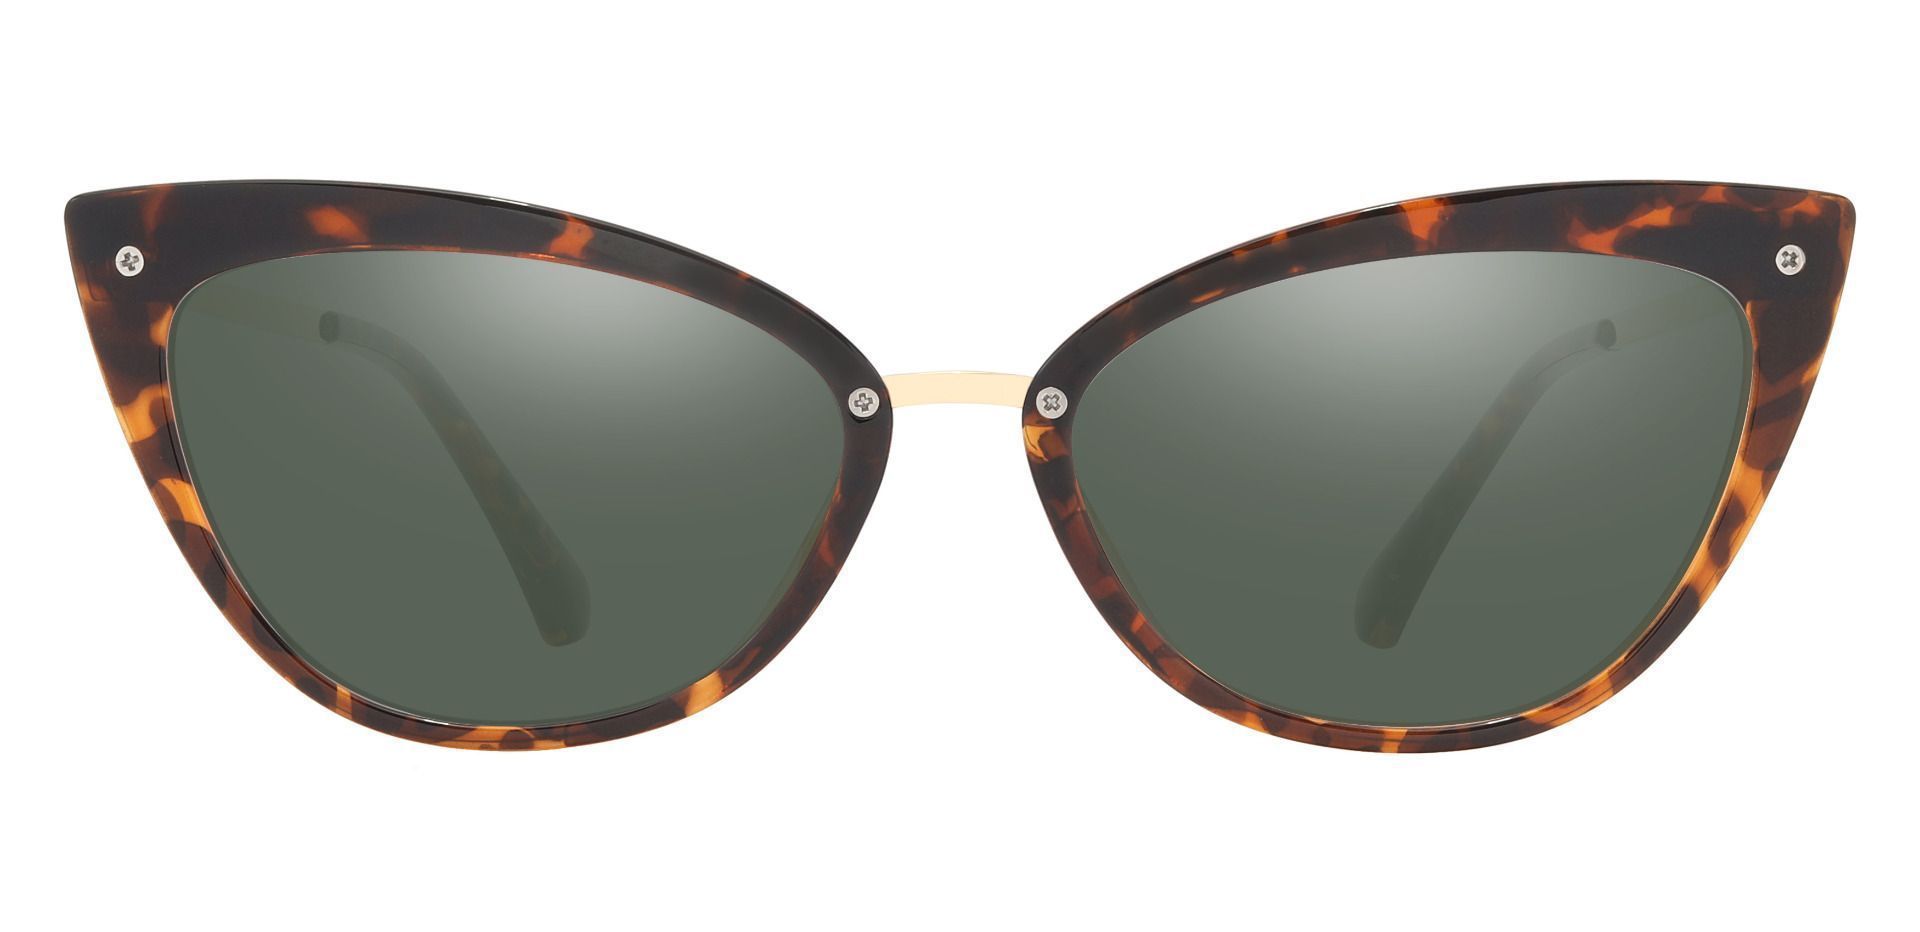 Glenda Cat Eye Prescription Sunglasses - Tortoise Frame With Green Lenses